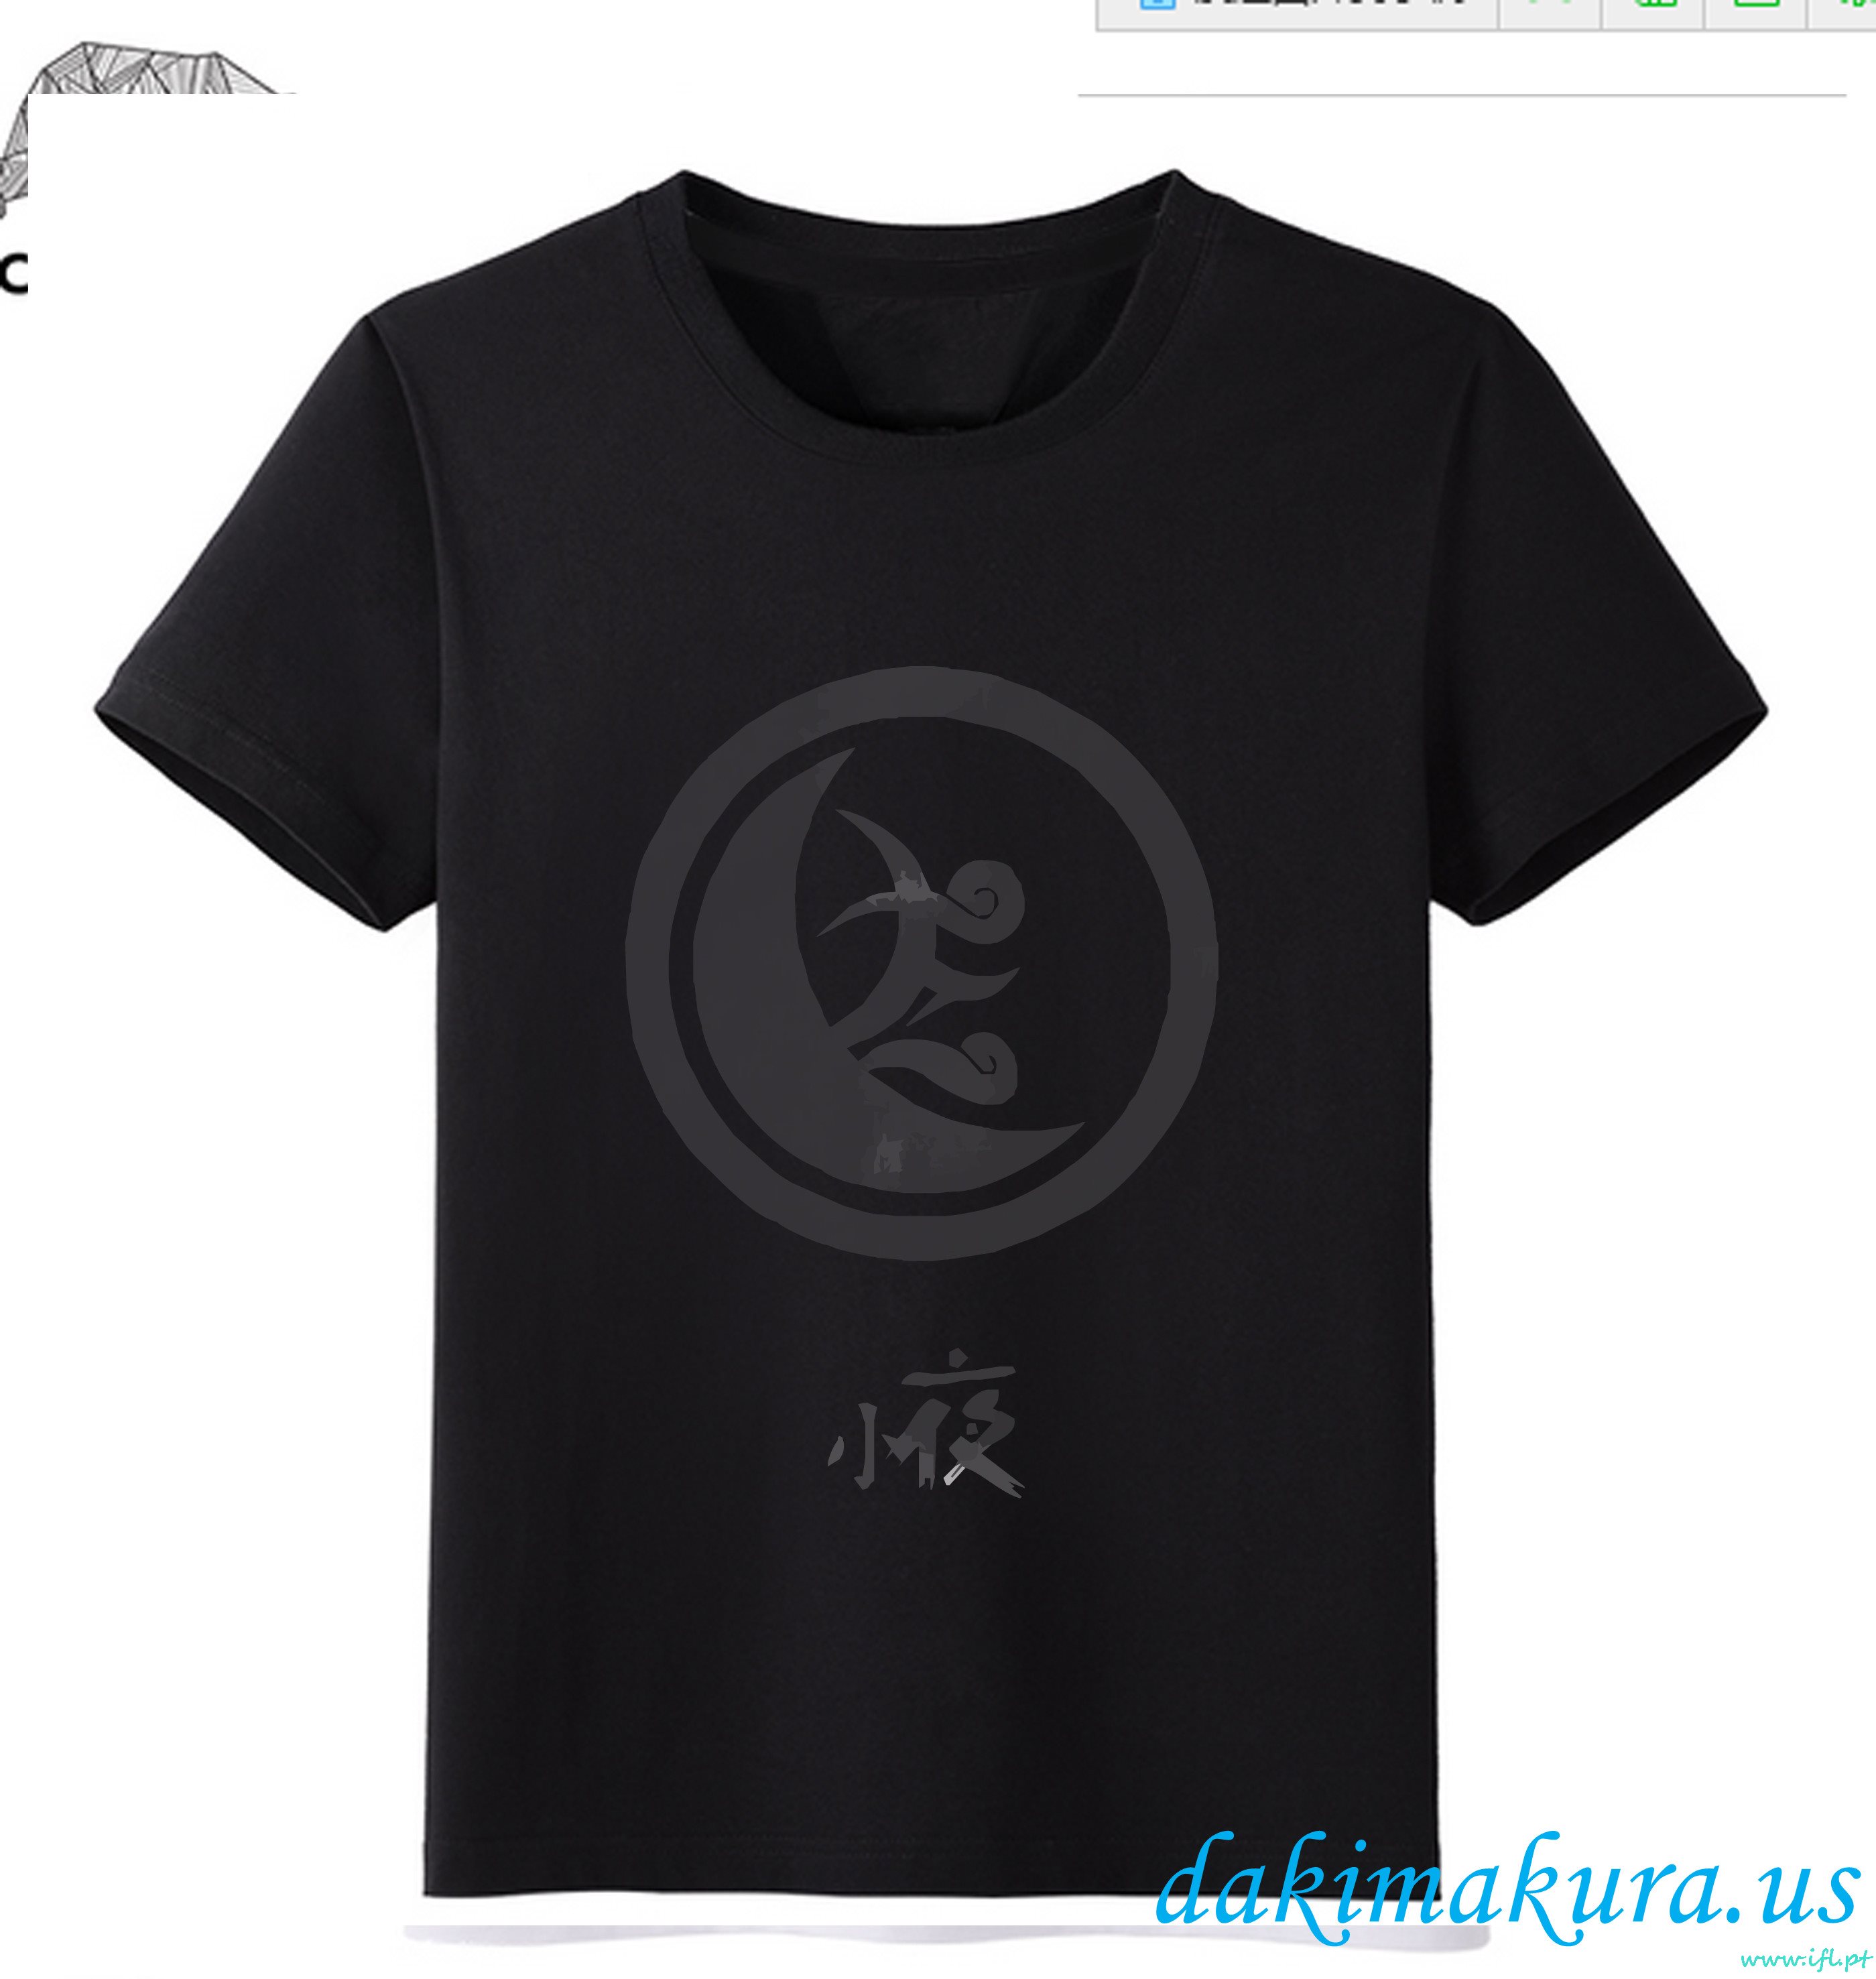 ราคาถูกสีดำ - Touken Ranbu ออนไลน์ชาย Anime แฟชั่นเสื้อยืดจากโรงงานจีน